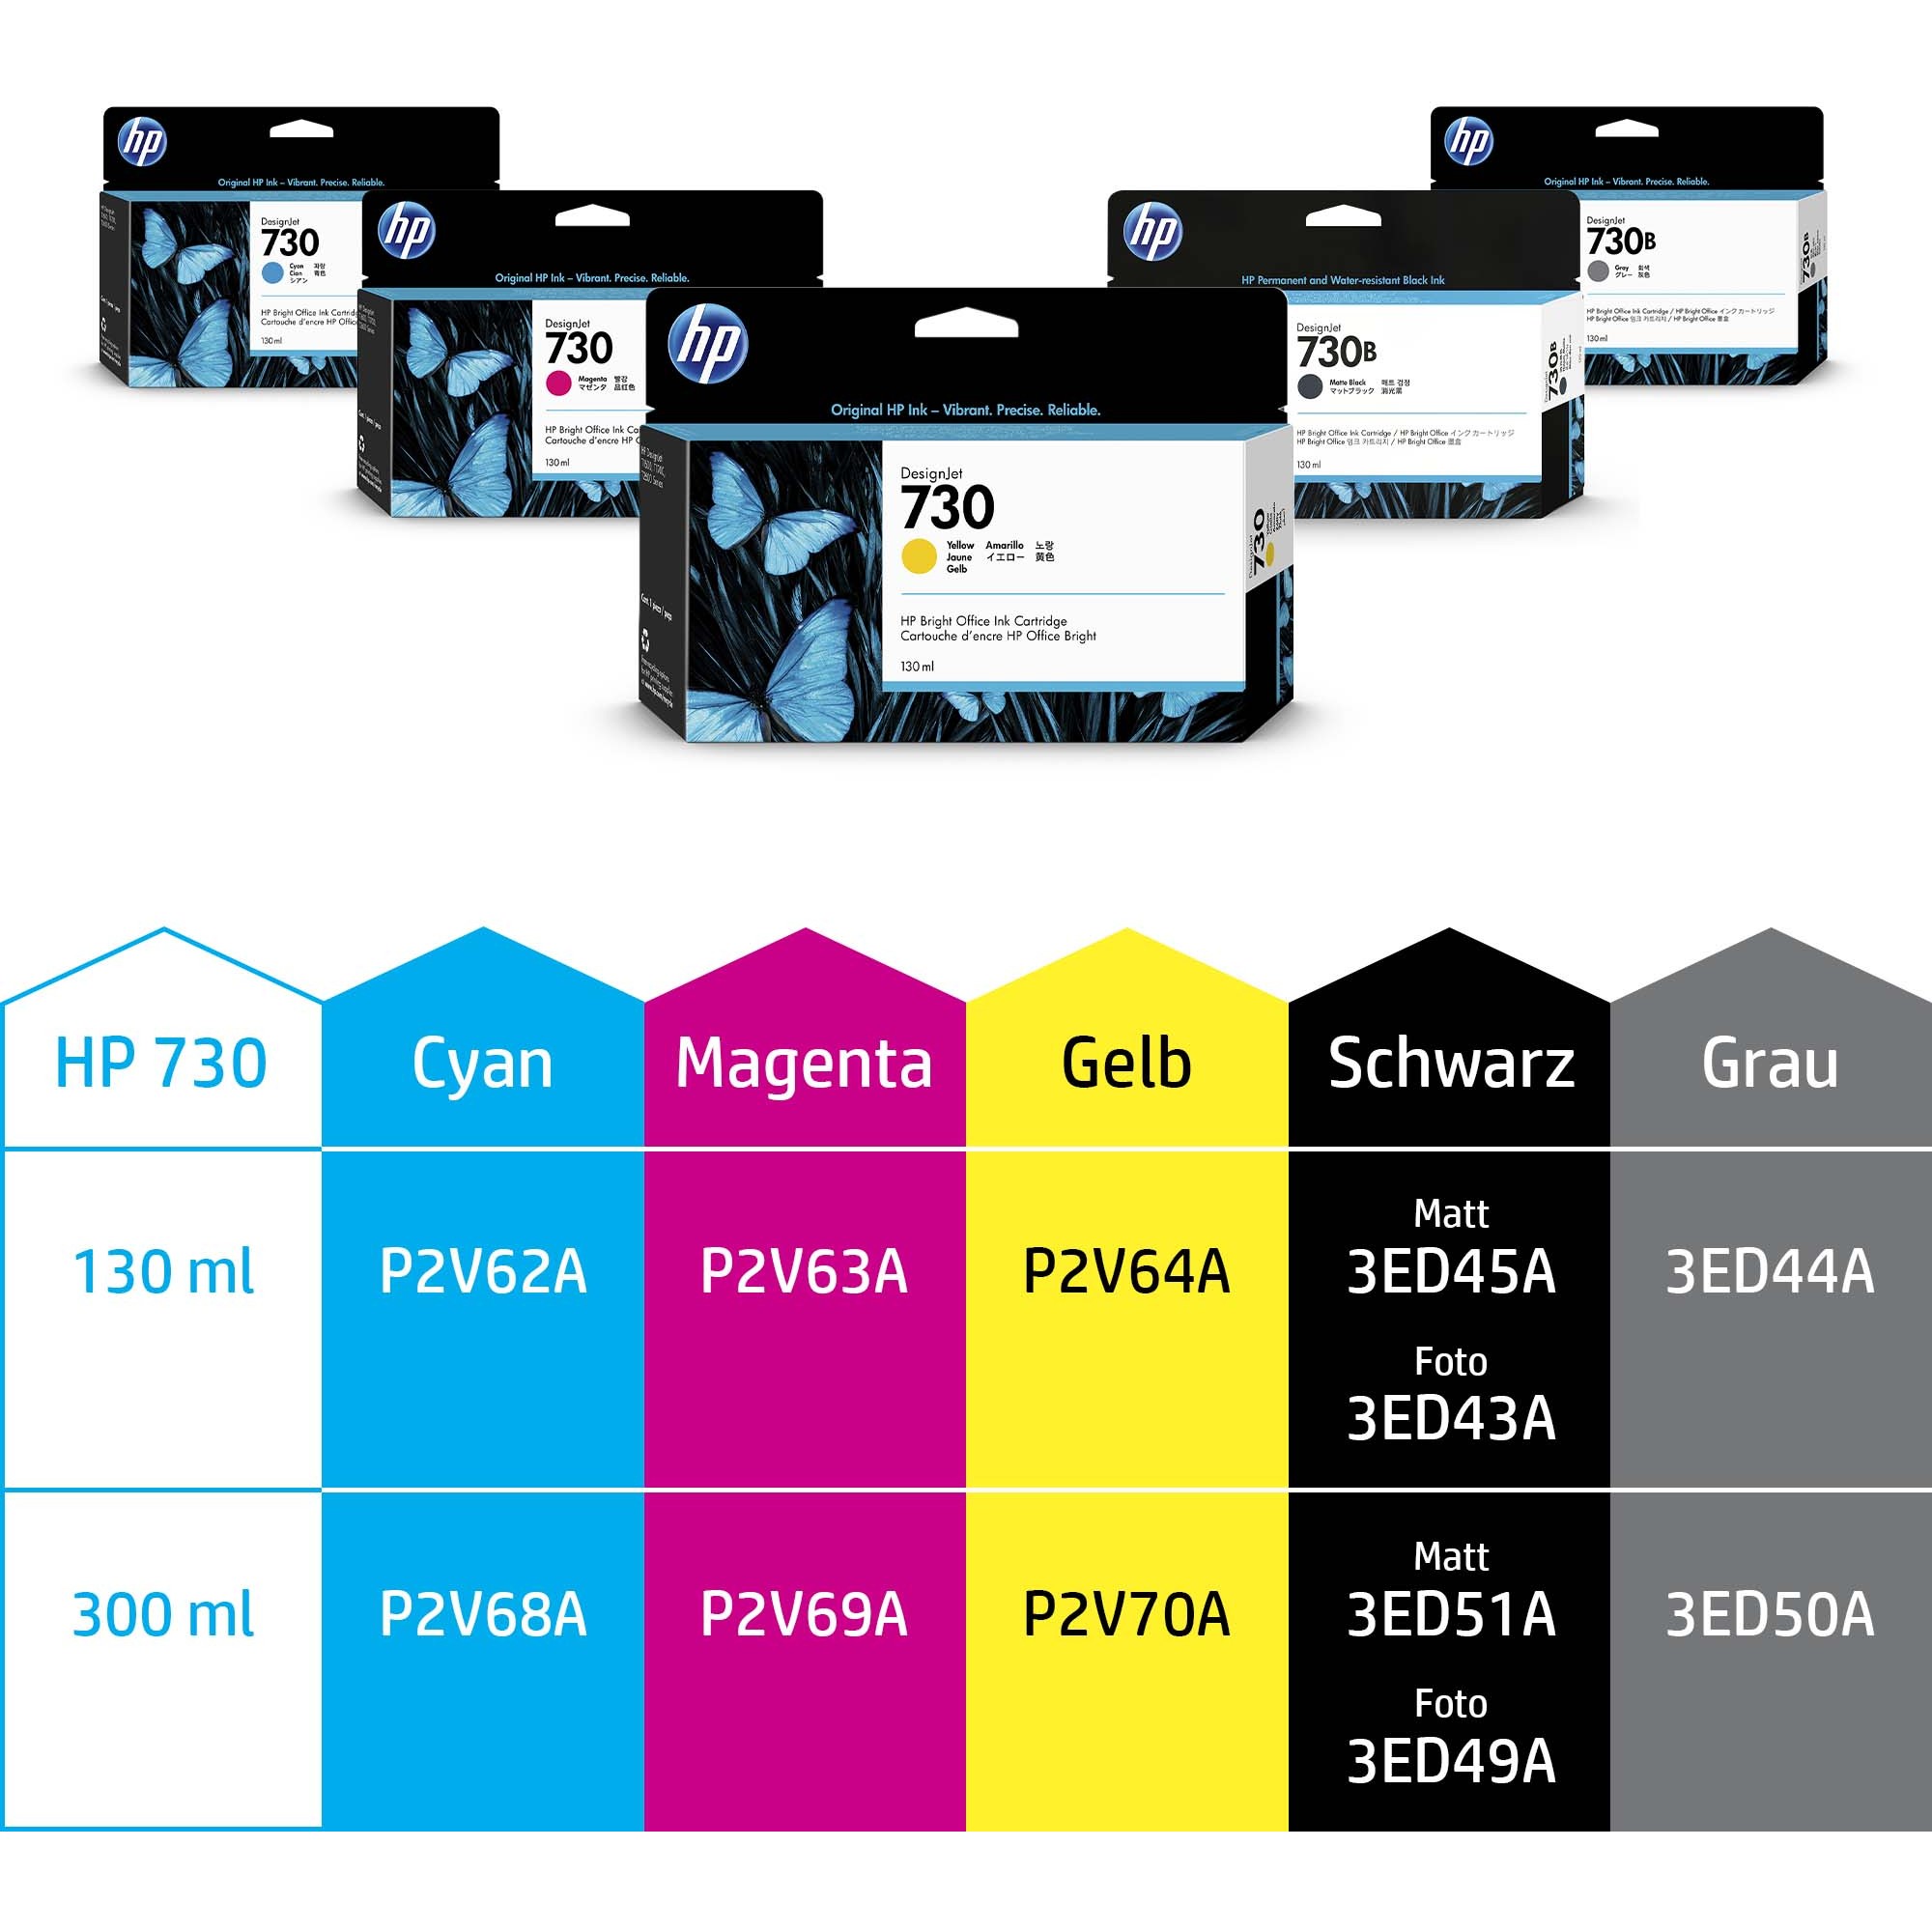 HP P2V68A, Tinte, HP 730 300-ml Cyan DesignJet ink P2V68A (BILD2)